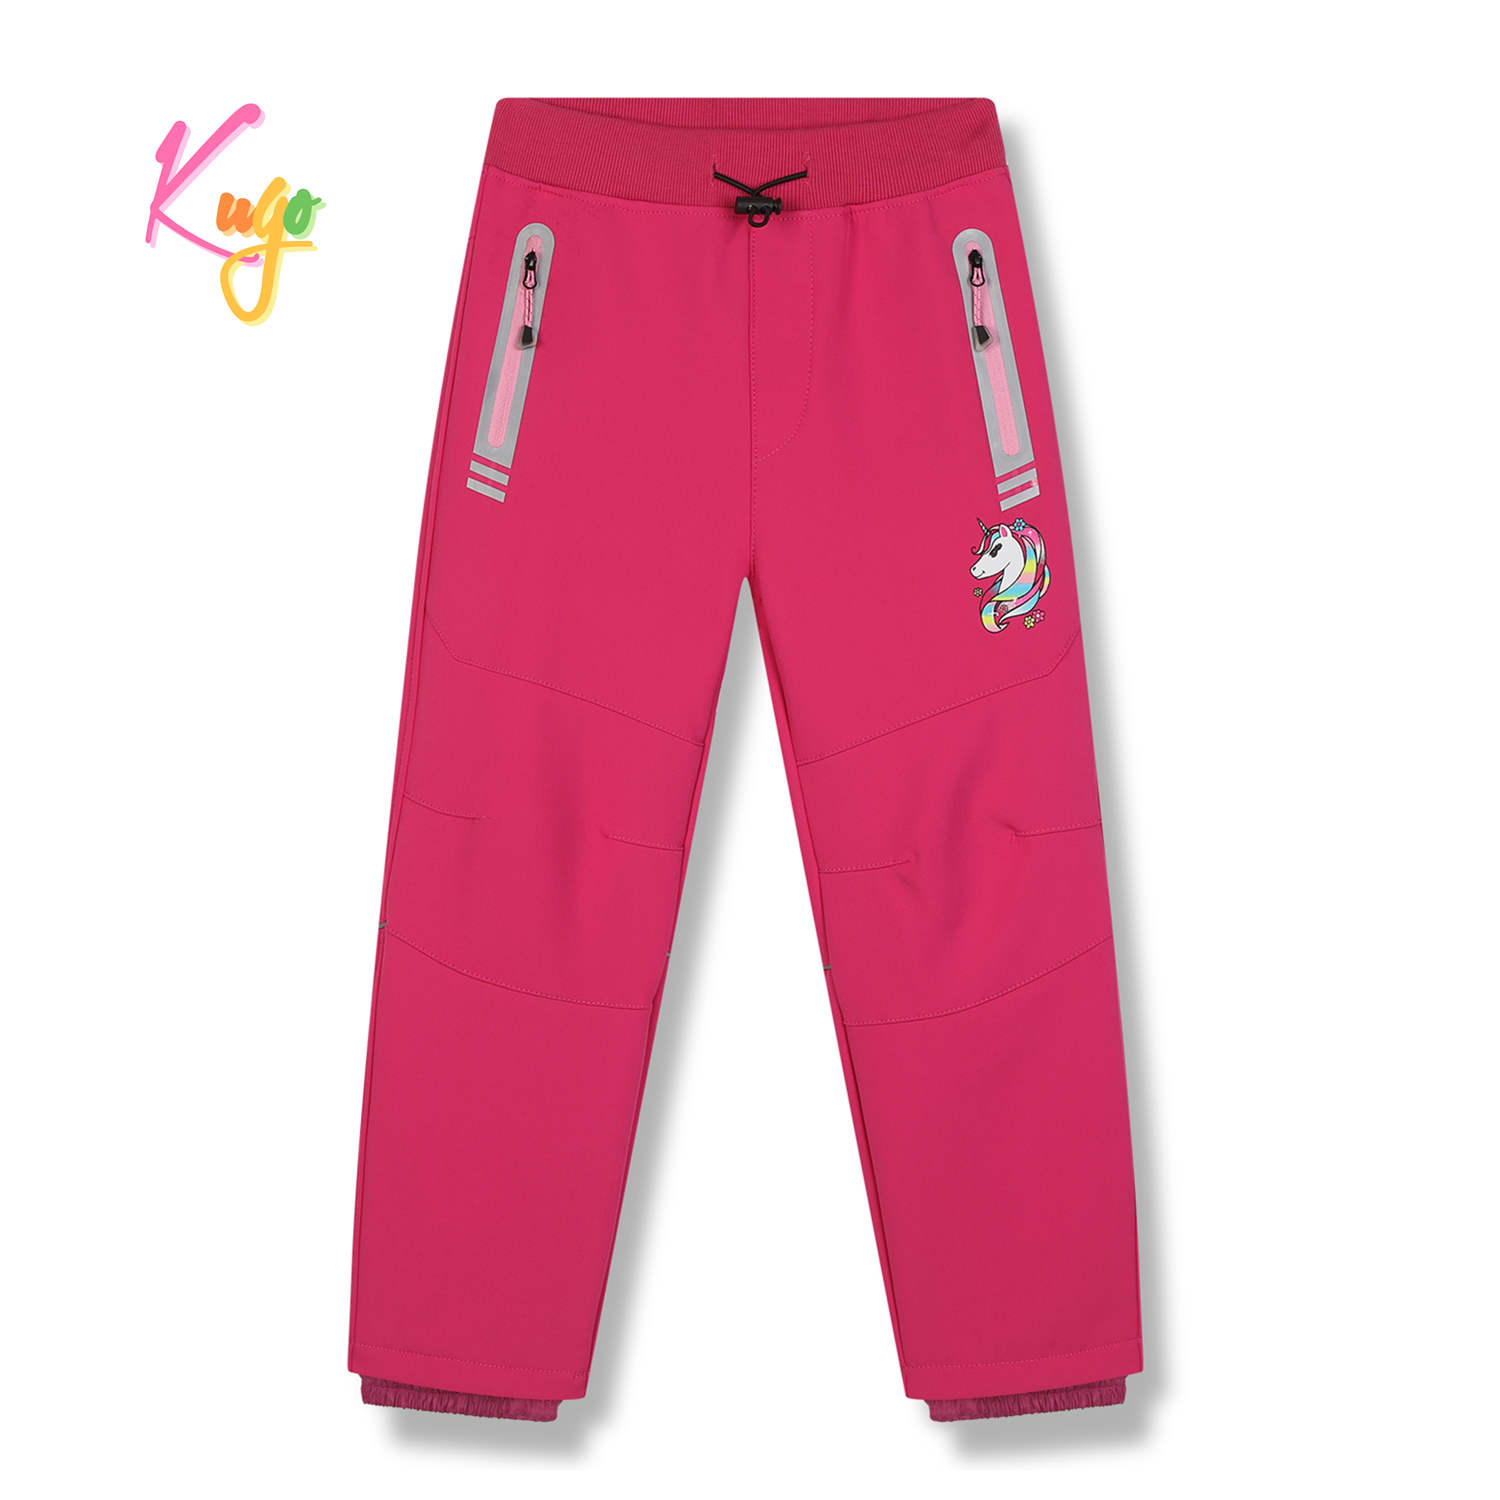 Dívčí softshellové kalhoty, zateplené - KUGO HK5618, růžová Barva: Růžová, Velikost: 104